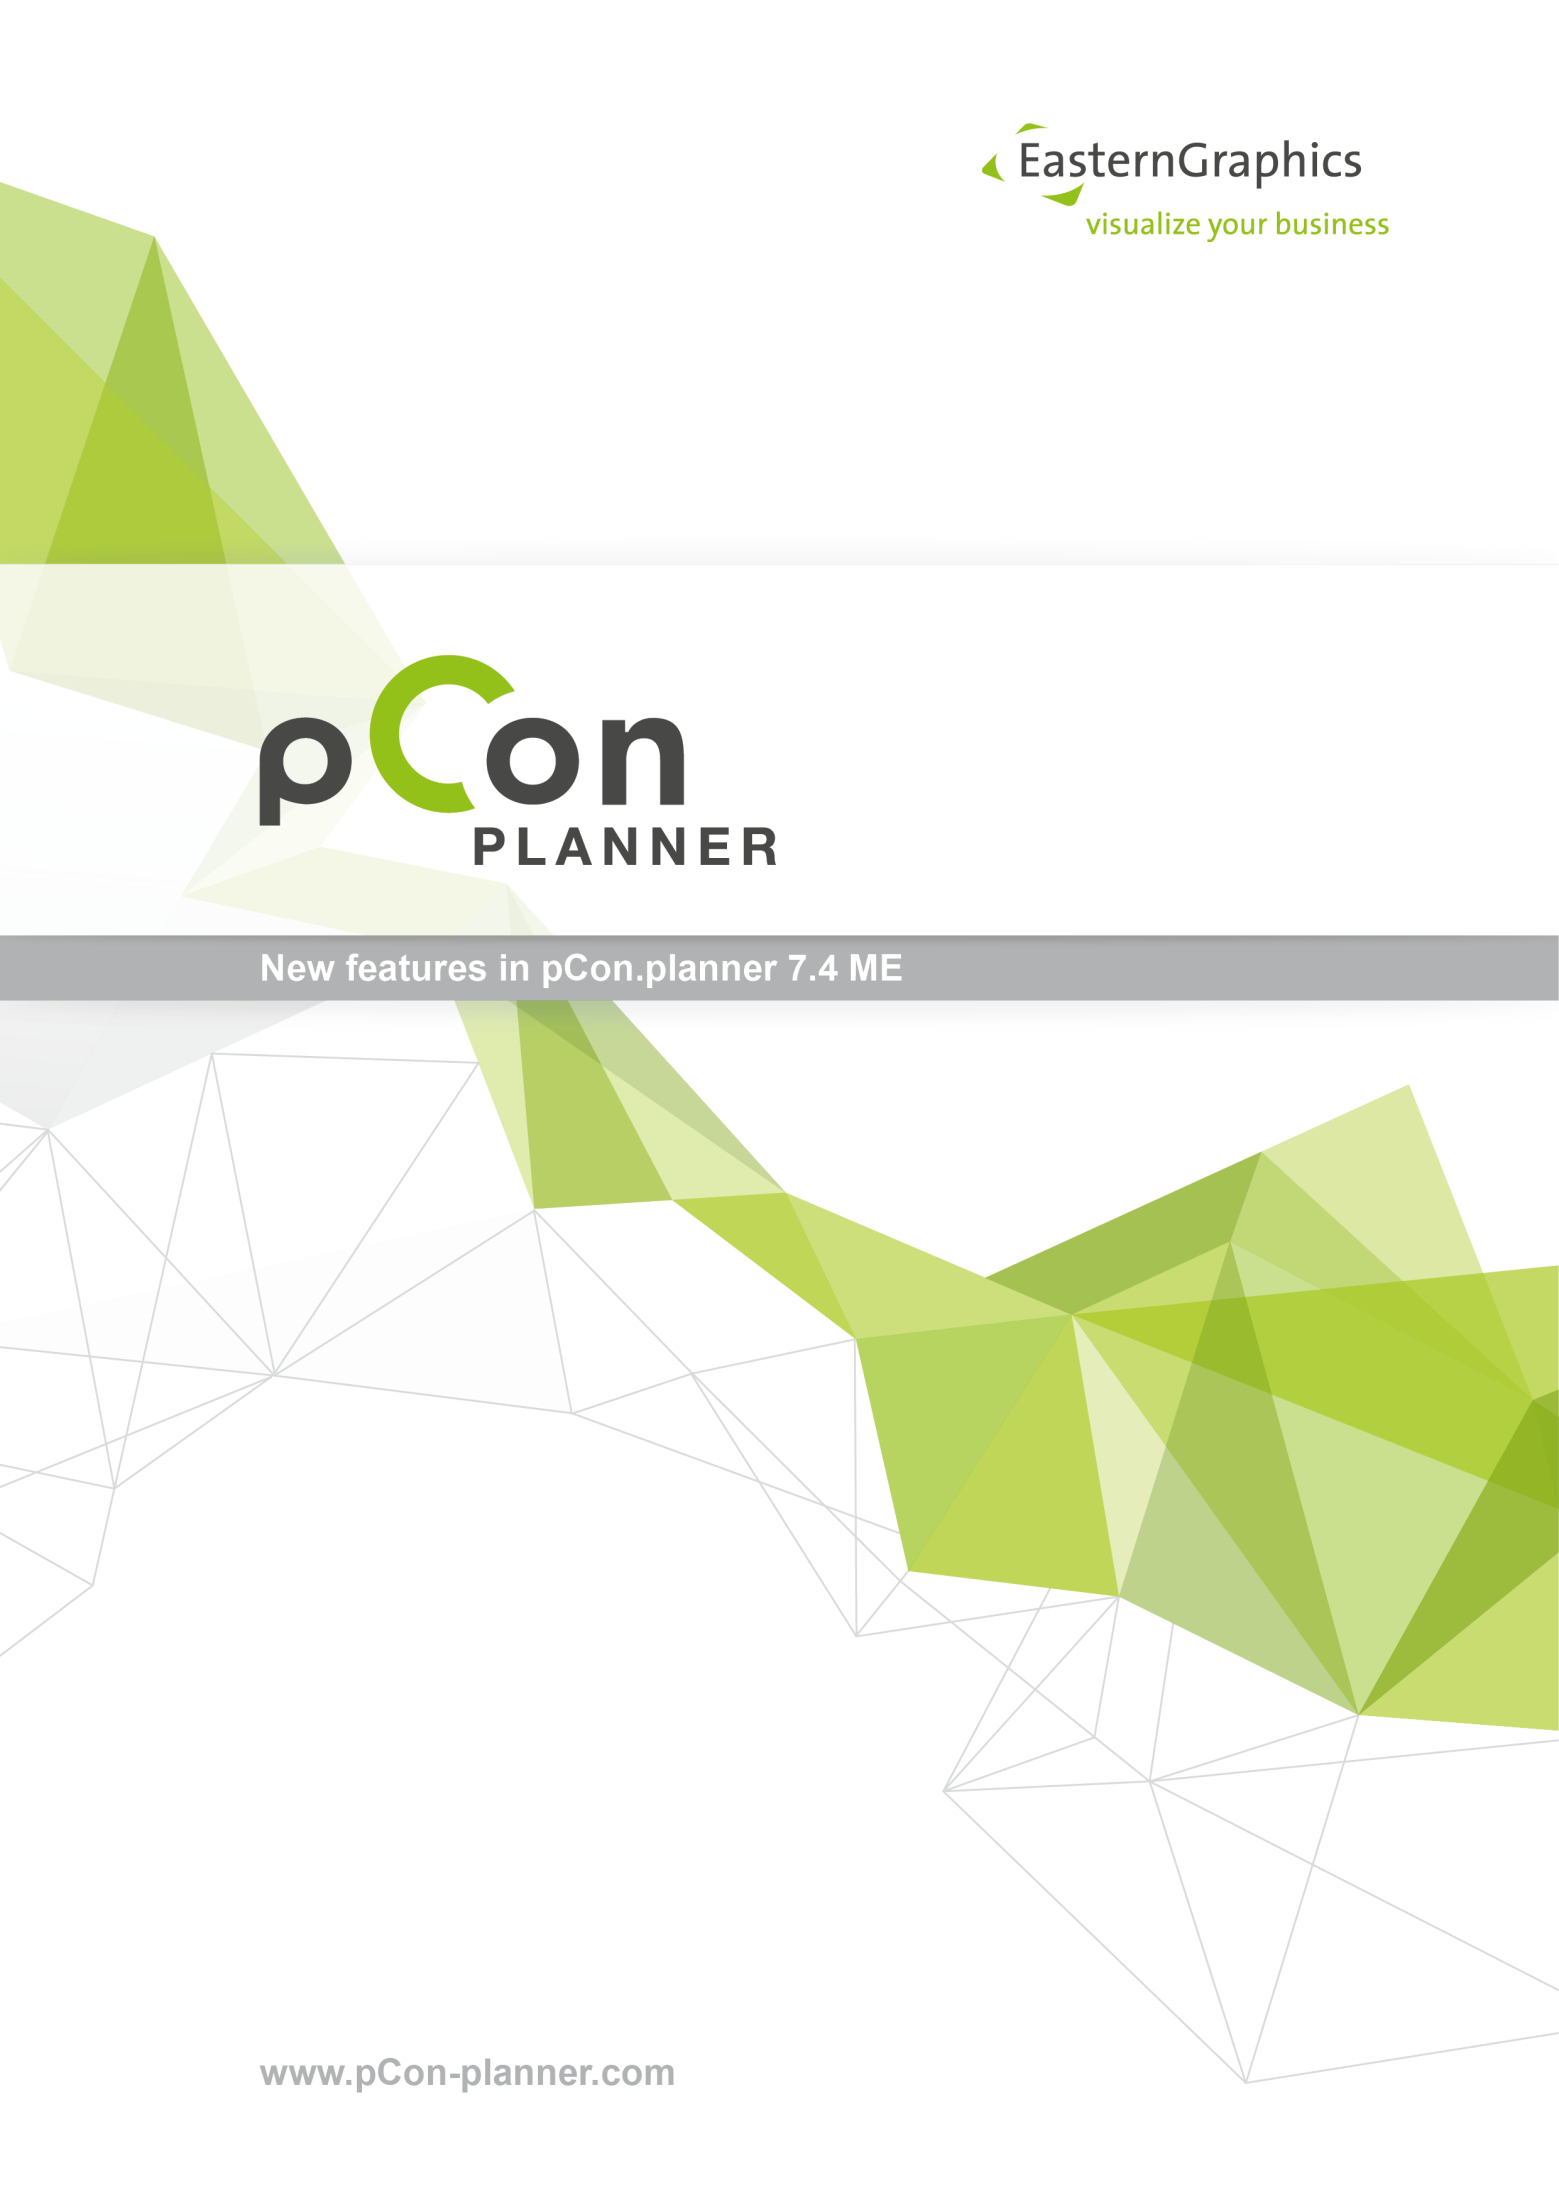 Nieuwe functionaliteiten in pcon.planner ME 7.